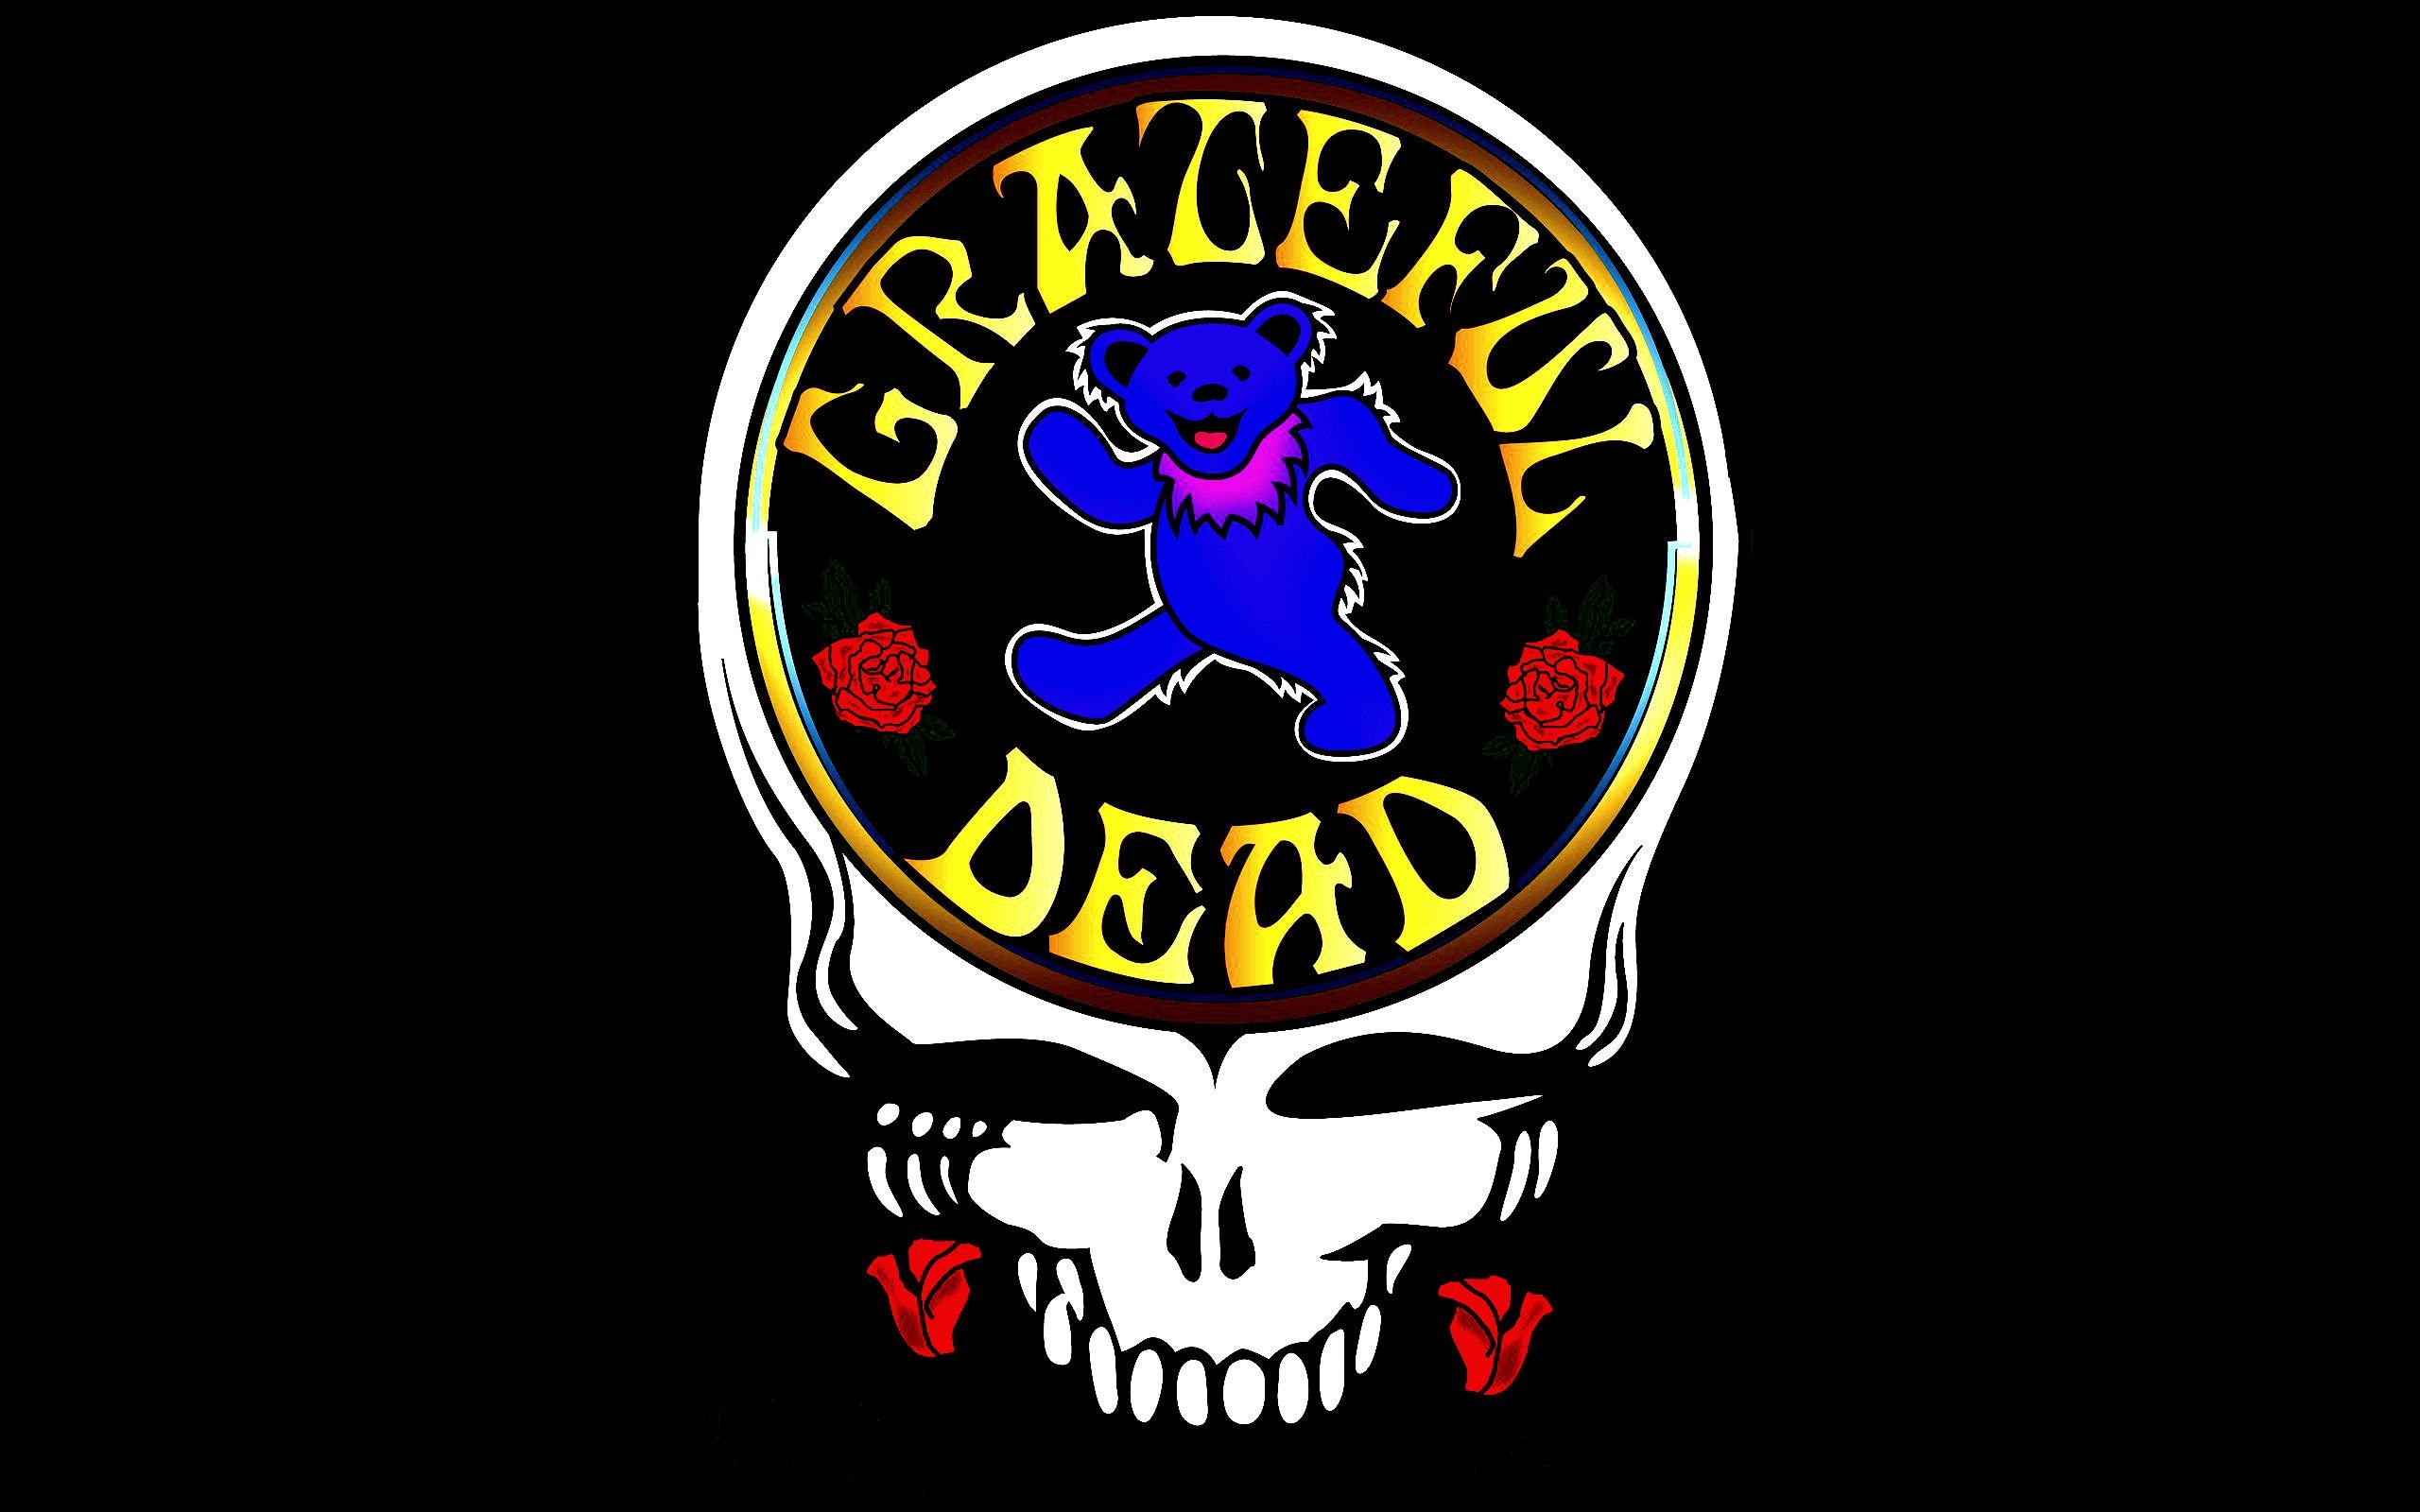 grateful dead wallpaper,logo,emblem,bone,skull,illustration